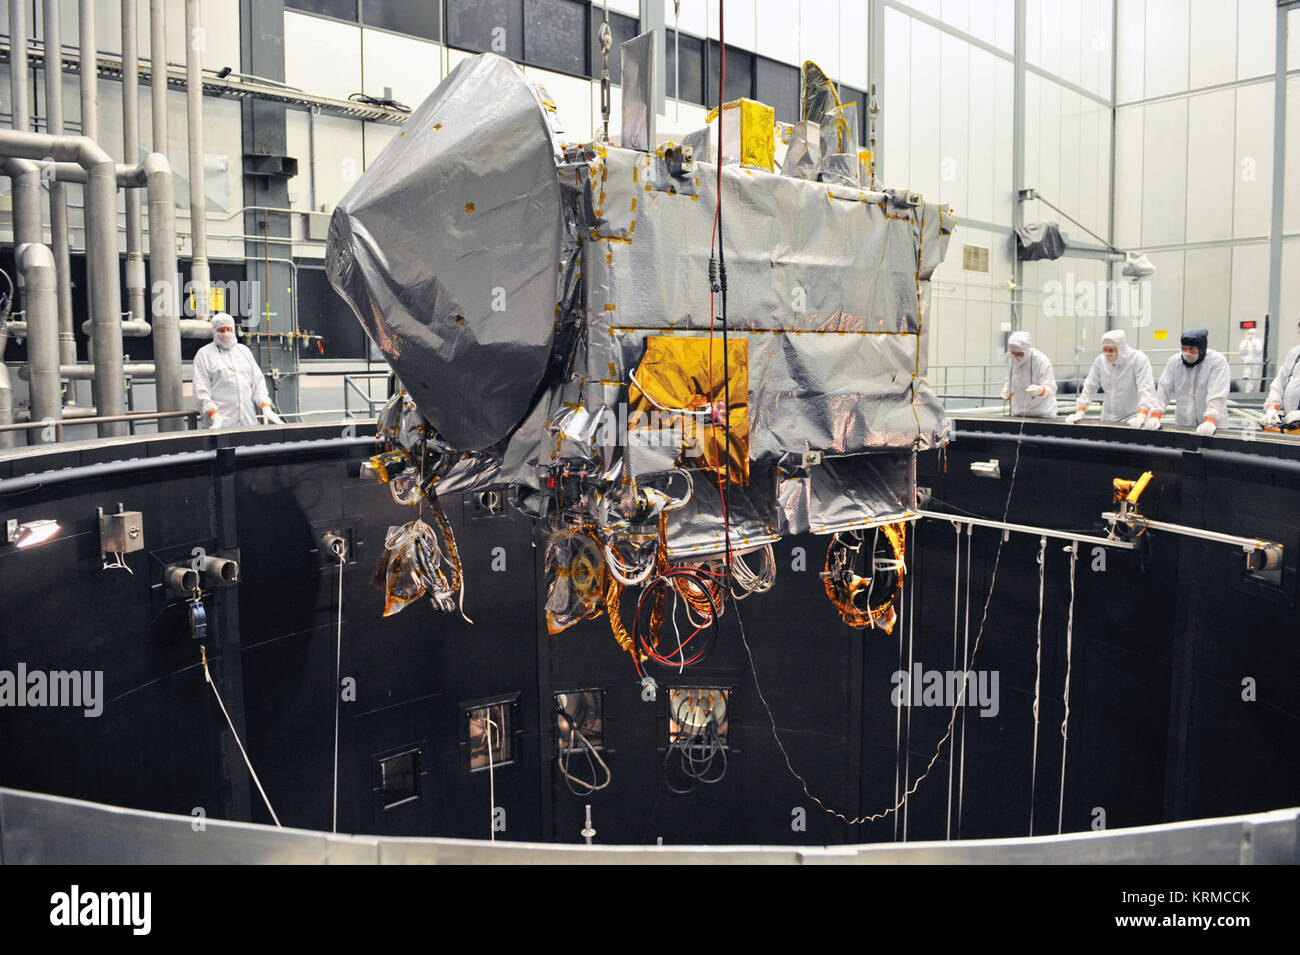 Der OSIRIS-REx Raumfahrzeuge in die Thermische Vakuumkammer bei Lockheed Martin für Umweltprüfungen angehoben wird. Osiris-Rex tvac 2-11-160971 Stockfoto